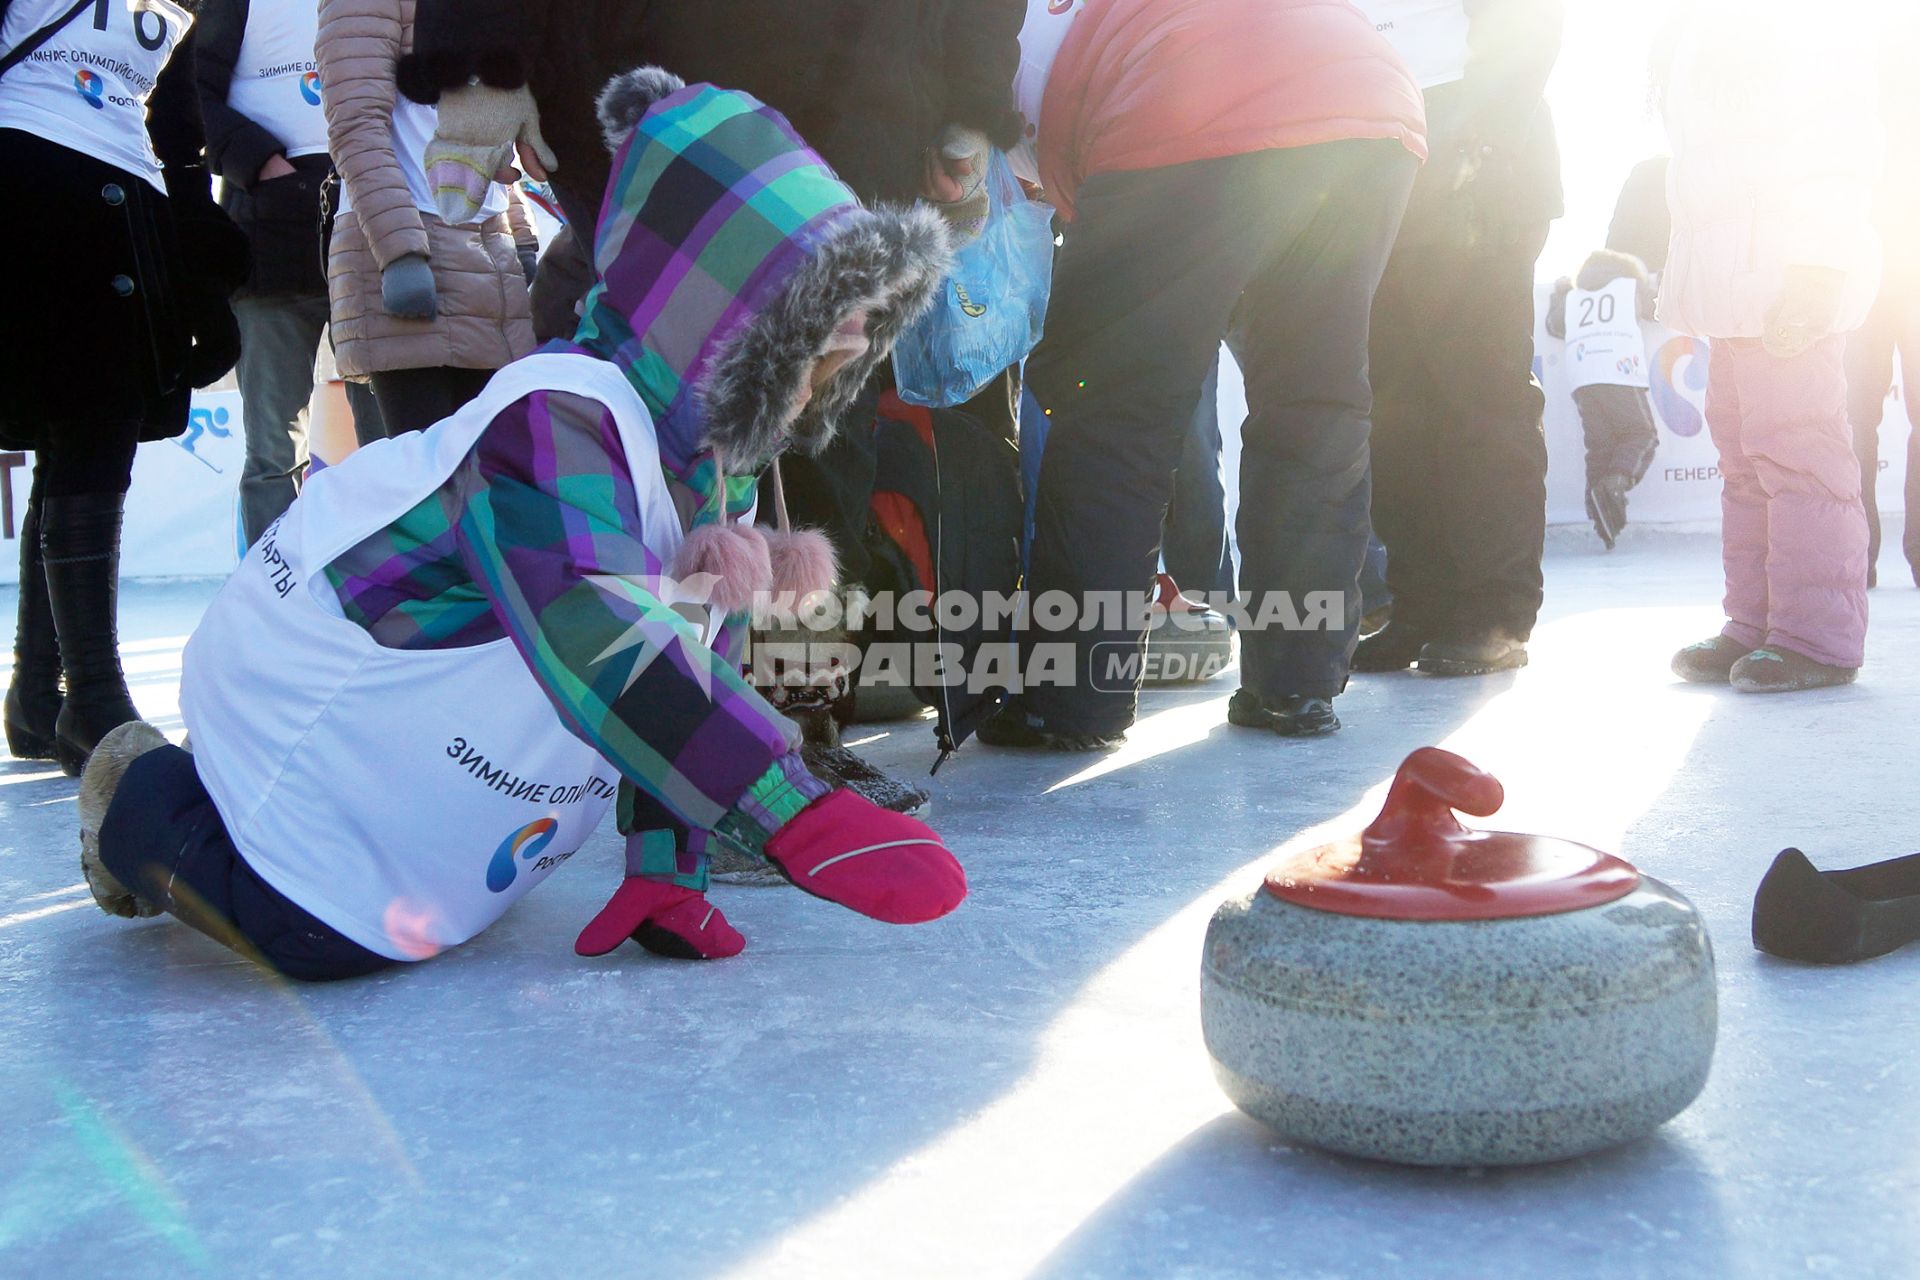 Мастер-класс по керлингу в Екатеринбурге. На снимке: ребенок с камнем для керлинга.